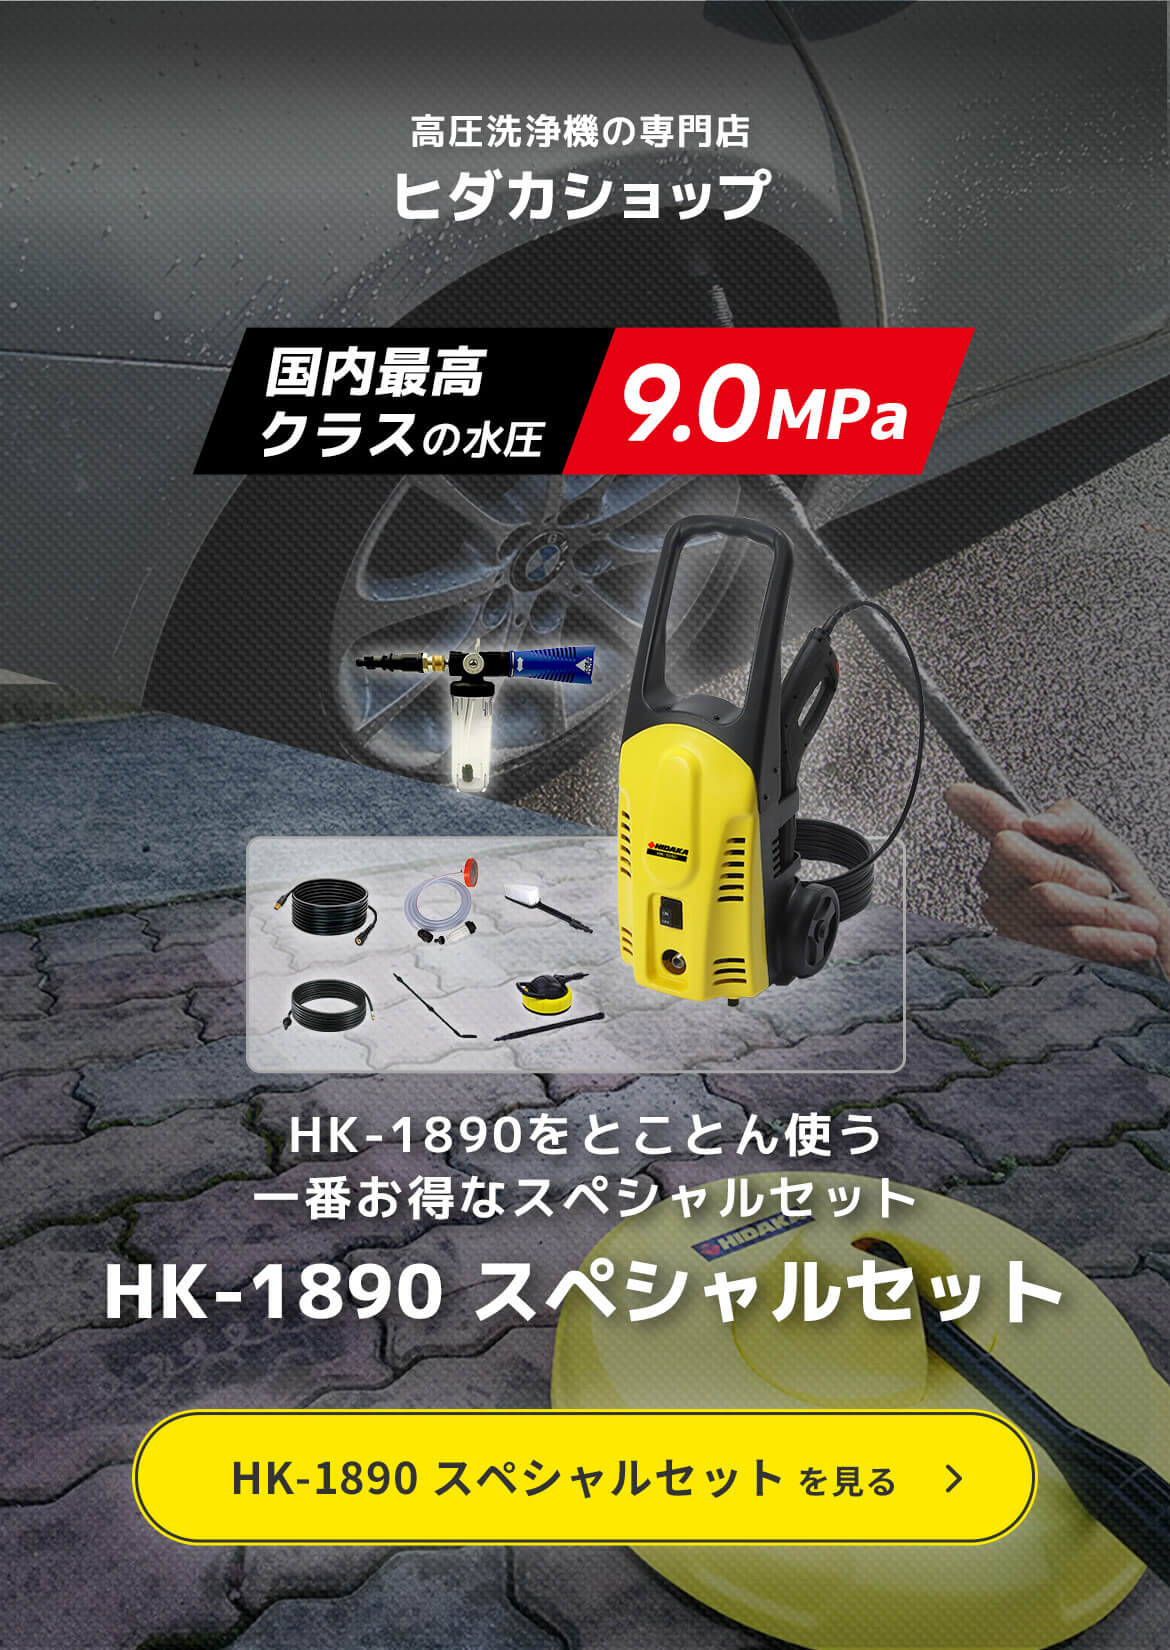 高圧洗浄機の専門店ヒダカショップ「国内最高クラスの水圧 9.0MPa」水道ホースが標準付属だから届いてすぐ使えます HK-1890 スペシャルセット。HK-1890 スペシャルセットを見る